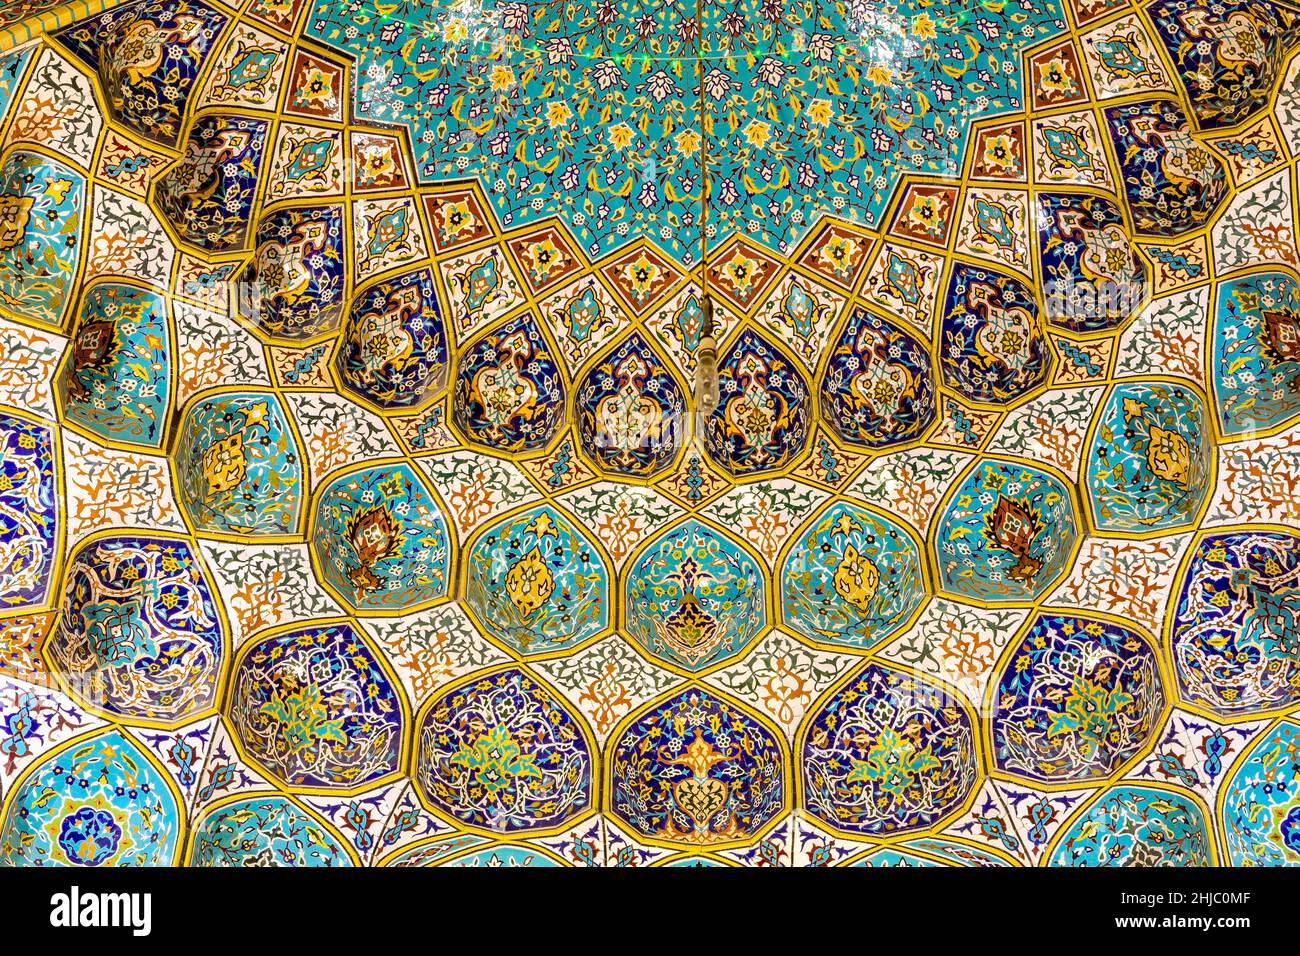 Die iranische Moschee (Imam Hussein Moschee) in Dubai farbenfrohe Kuppel mit floralen und geometrischen Kachelmustern, Beispiel persischer Architektur. Stockfoto